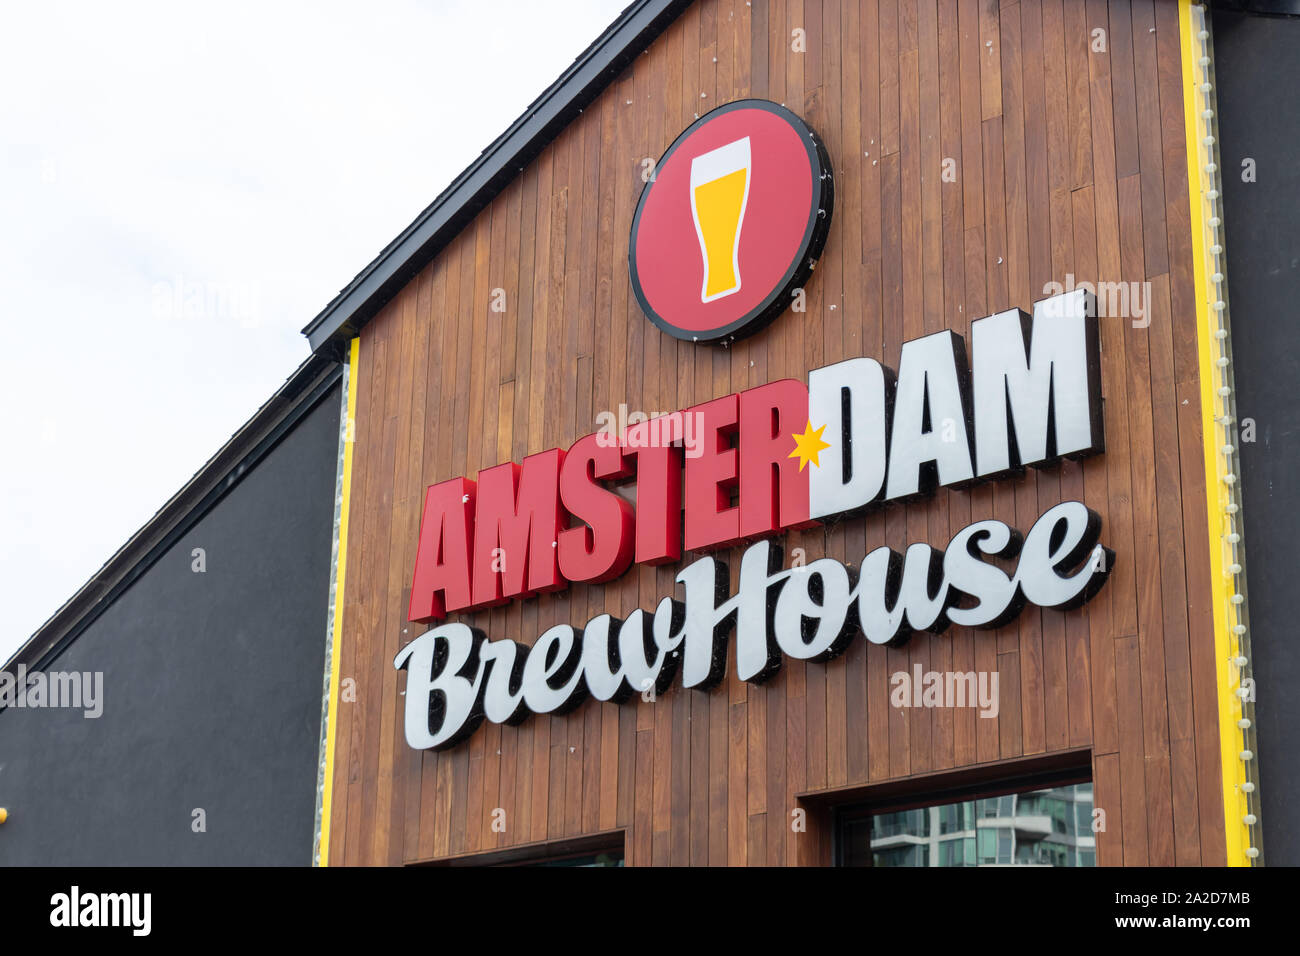 Panneau Amsterdam Brewhouse situé au sommet de la célèbre brasserie et restaurant riverain de Toronto. Banque D'Images